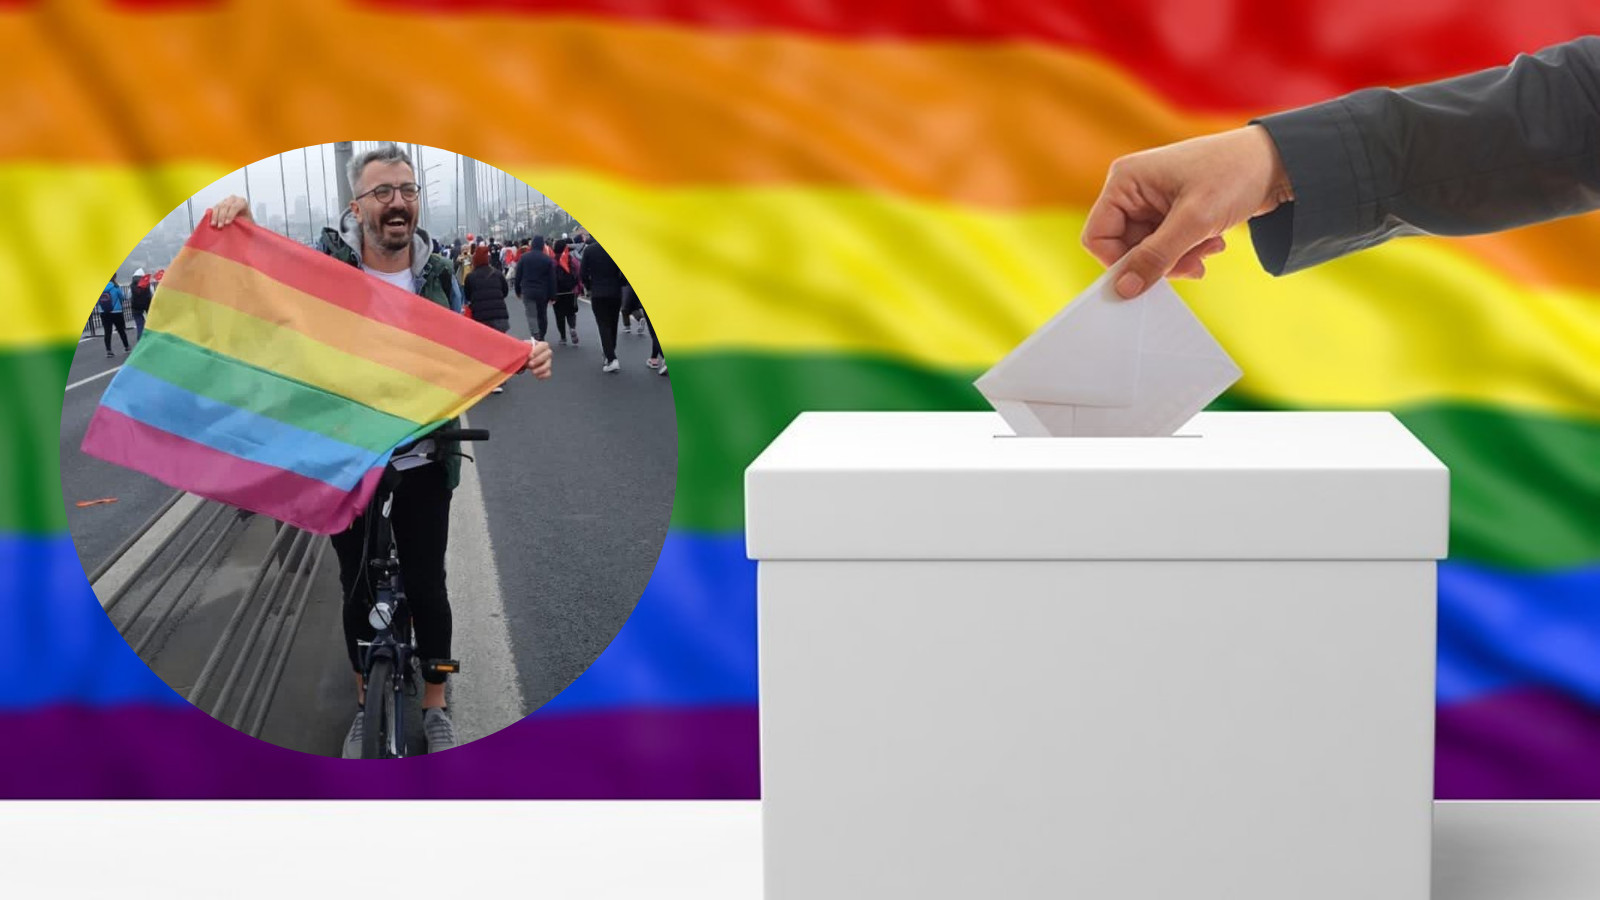 “Seçim atmosferi LGBTİ+’lar için güvenlik meselesini hayatileştirdi” | Kaos GL - LGBTİ+ Haber Portalı Haber